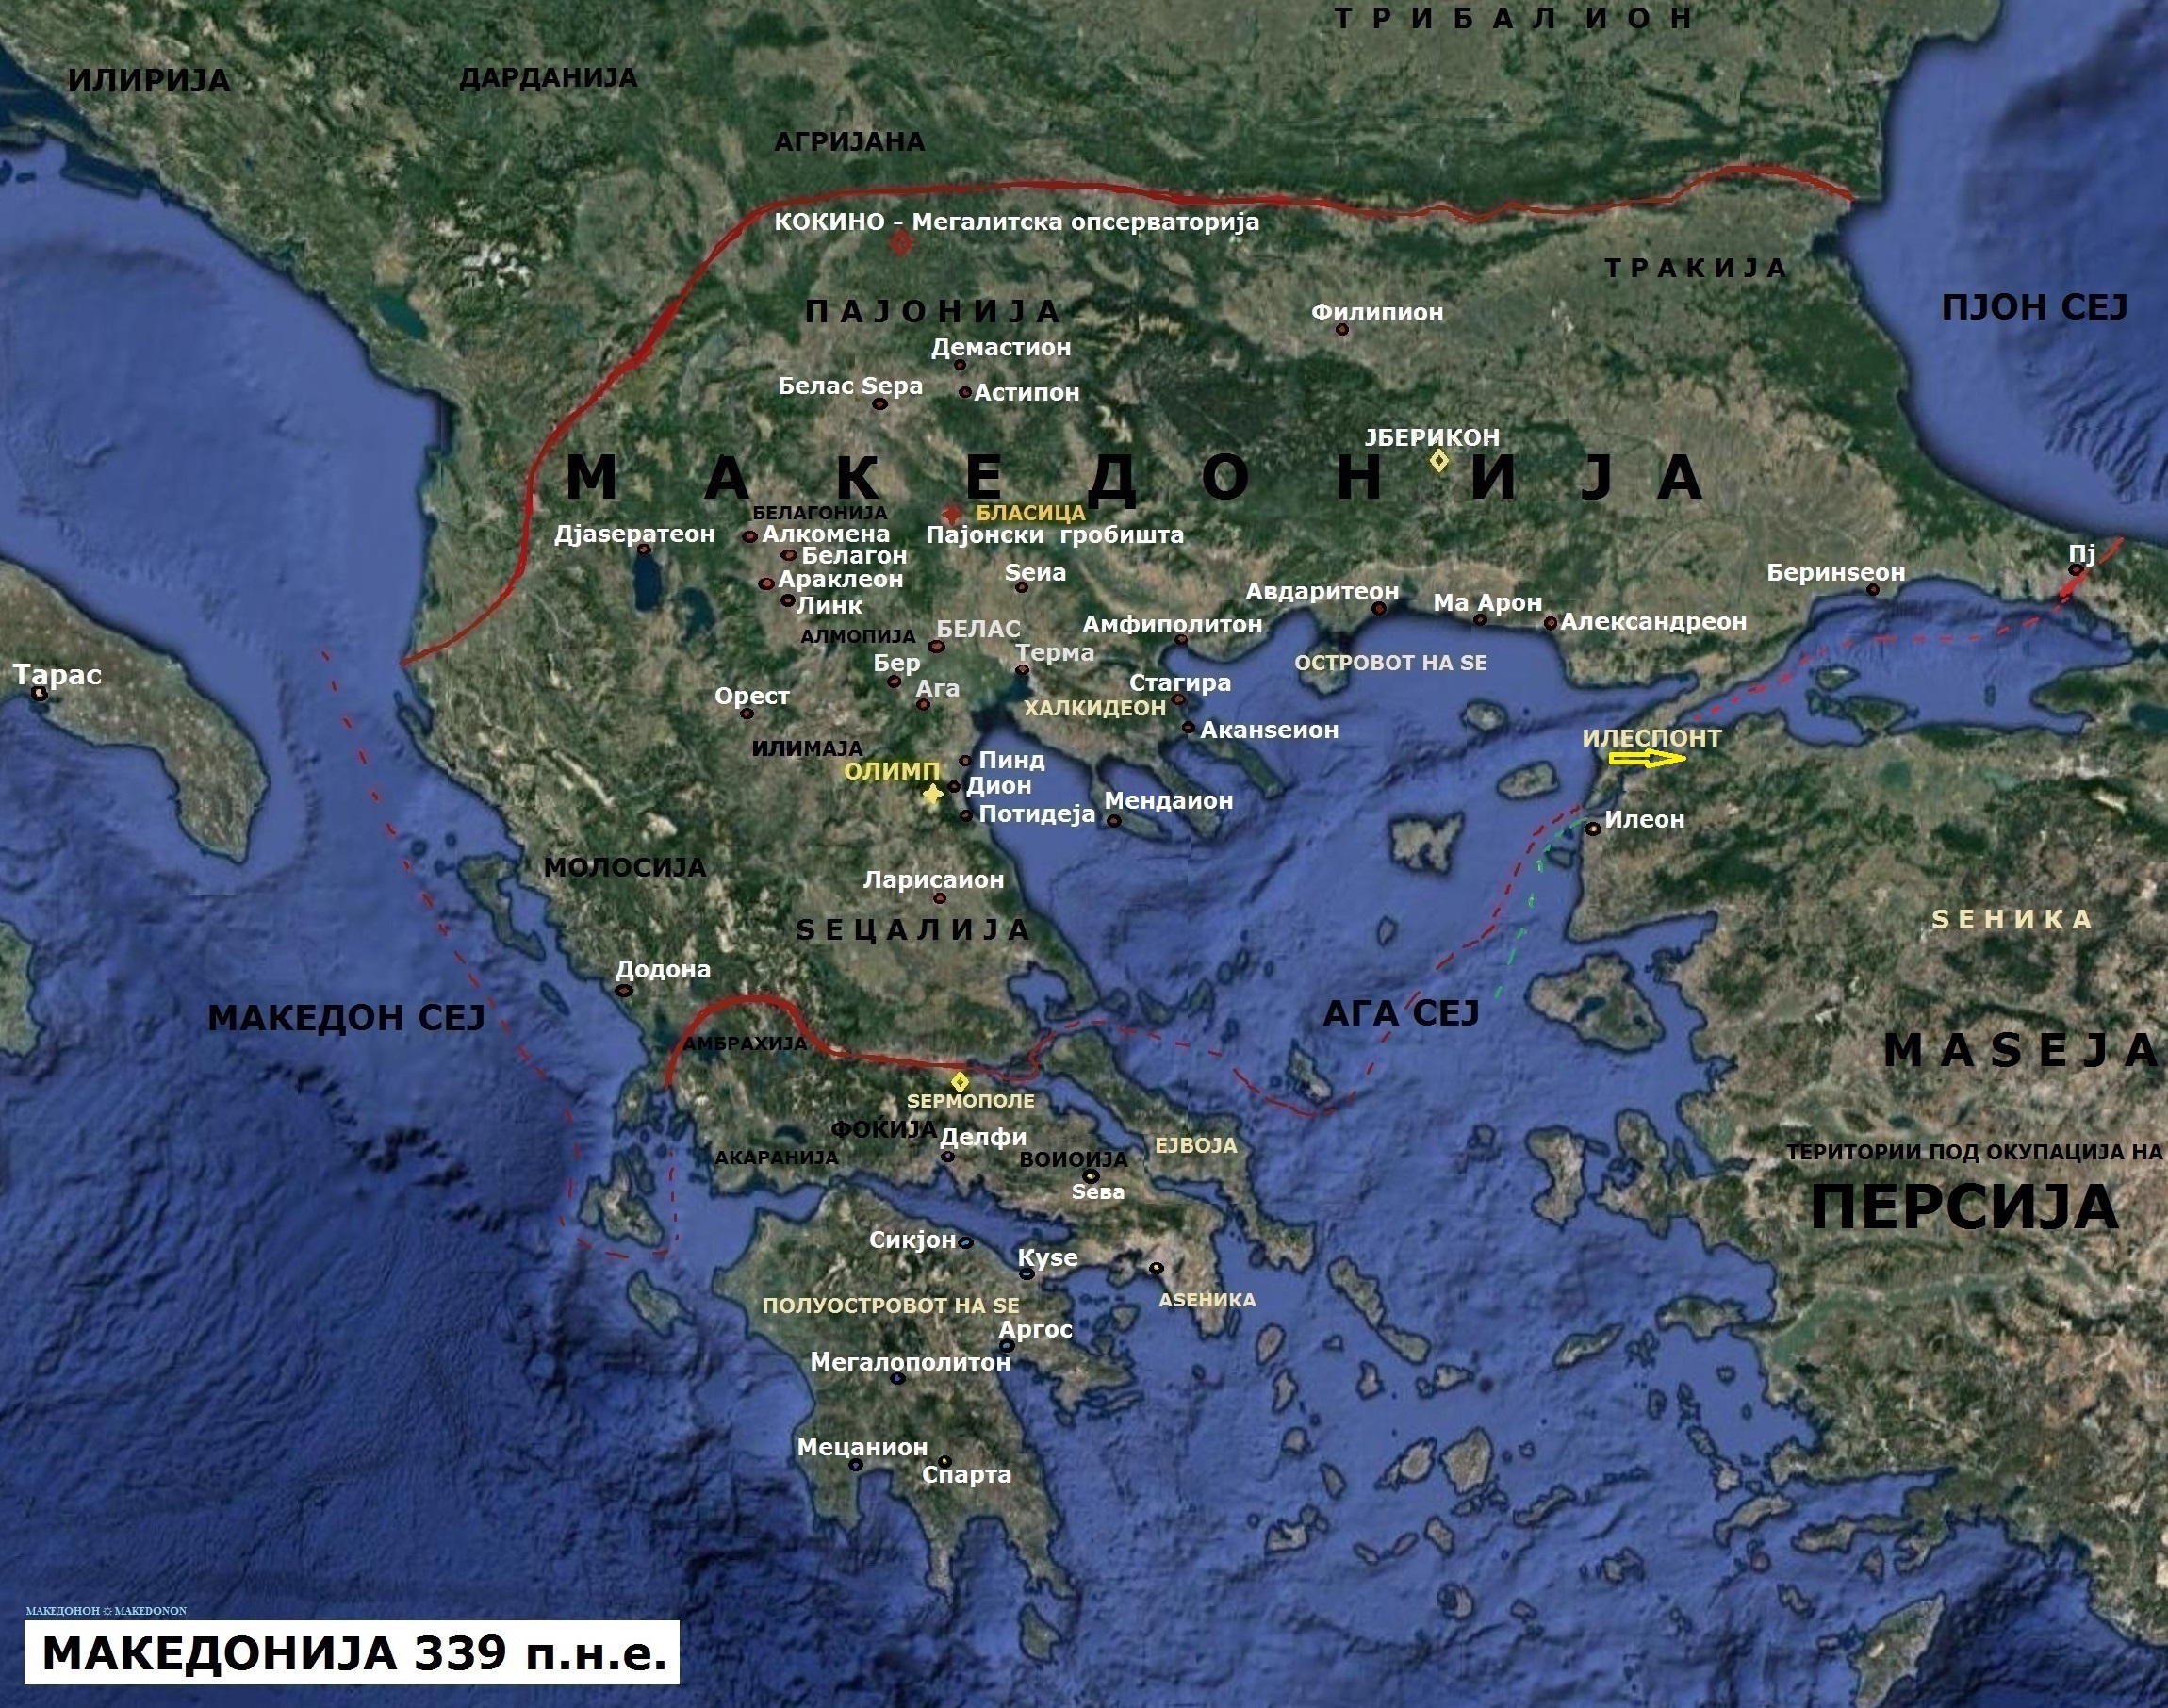 Македонија на Филип Македонски во 339 п.н.е.